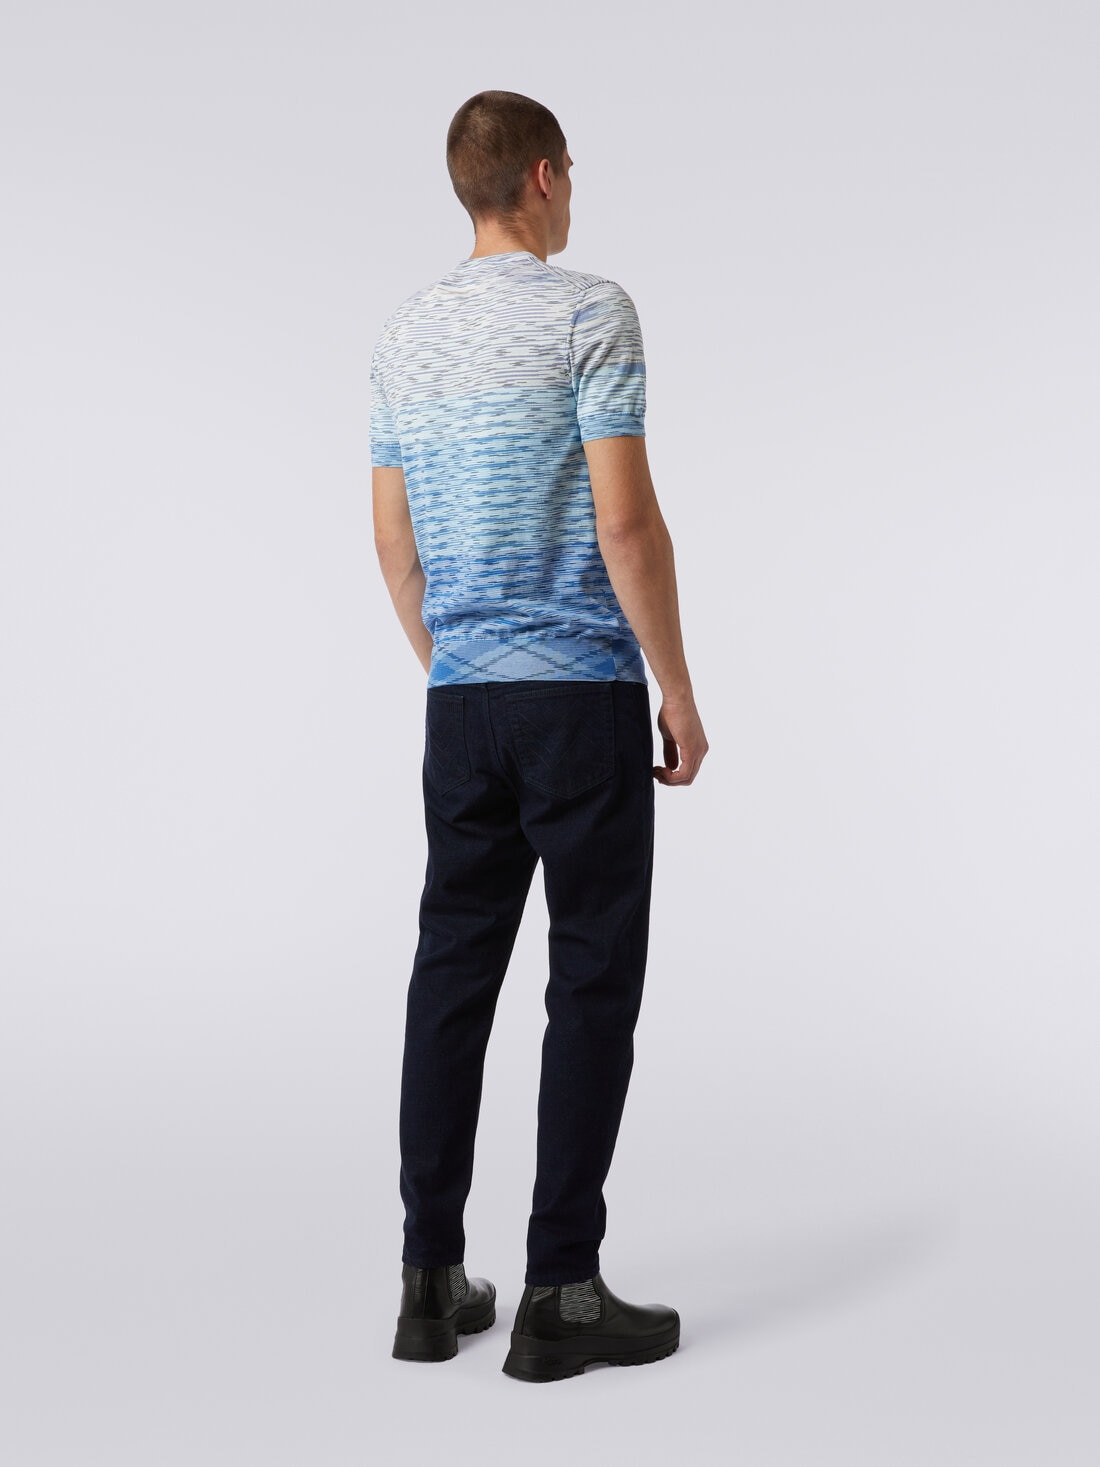 Rundhals-T-Shirt aus Baumwolle in Flammgarnoptik mit Dégradé-Effekt, Mehrfarbig  - US24SL0IBK012QS72F0 - 3